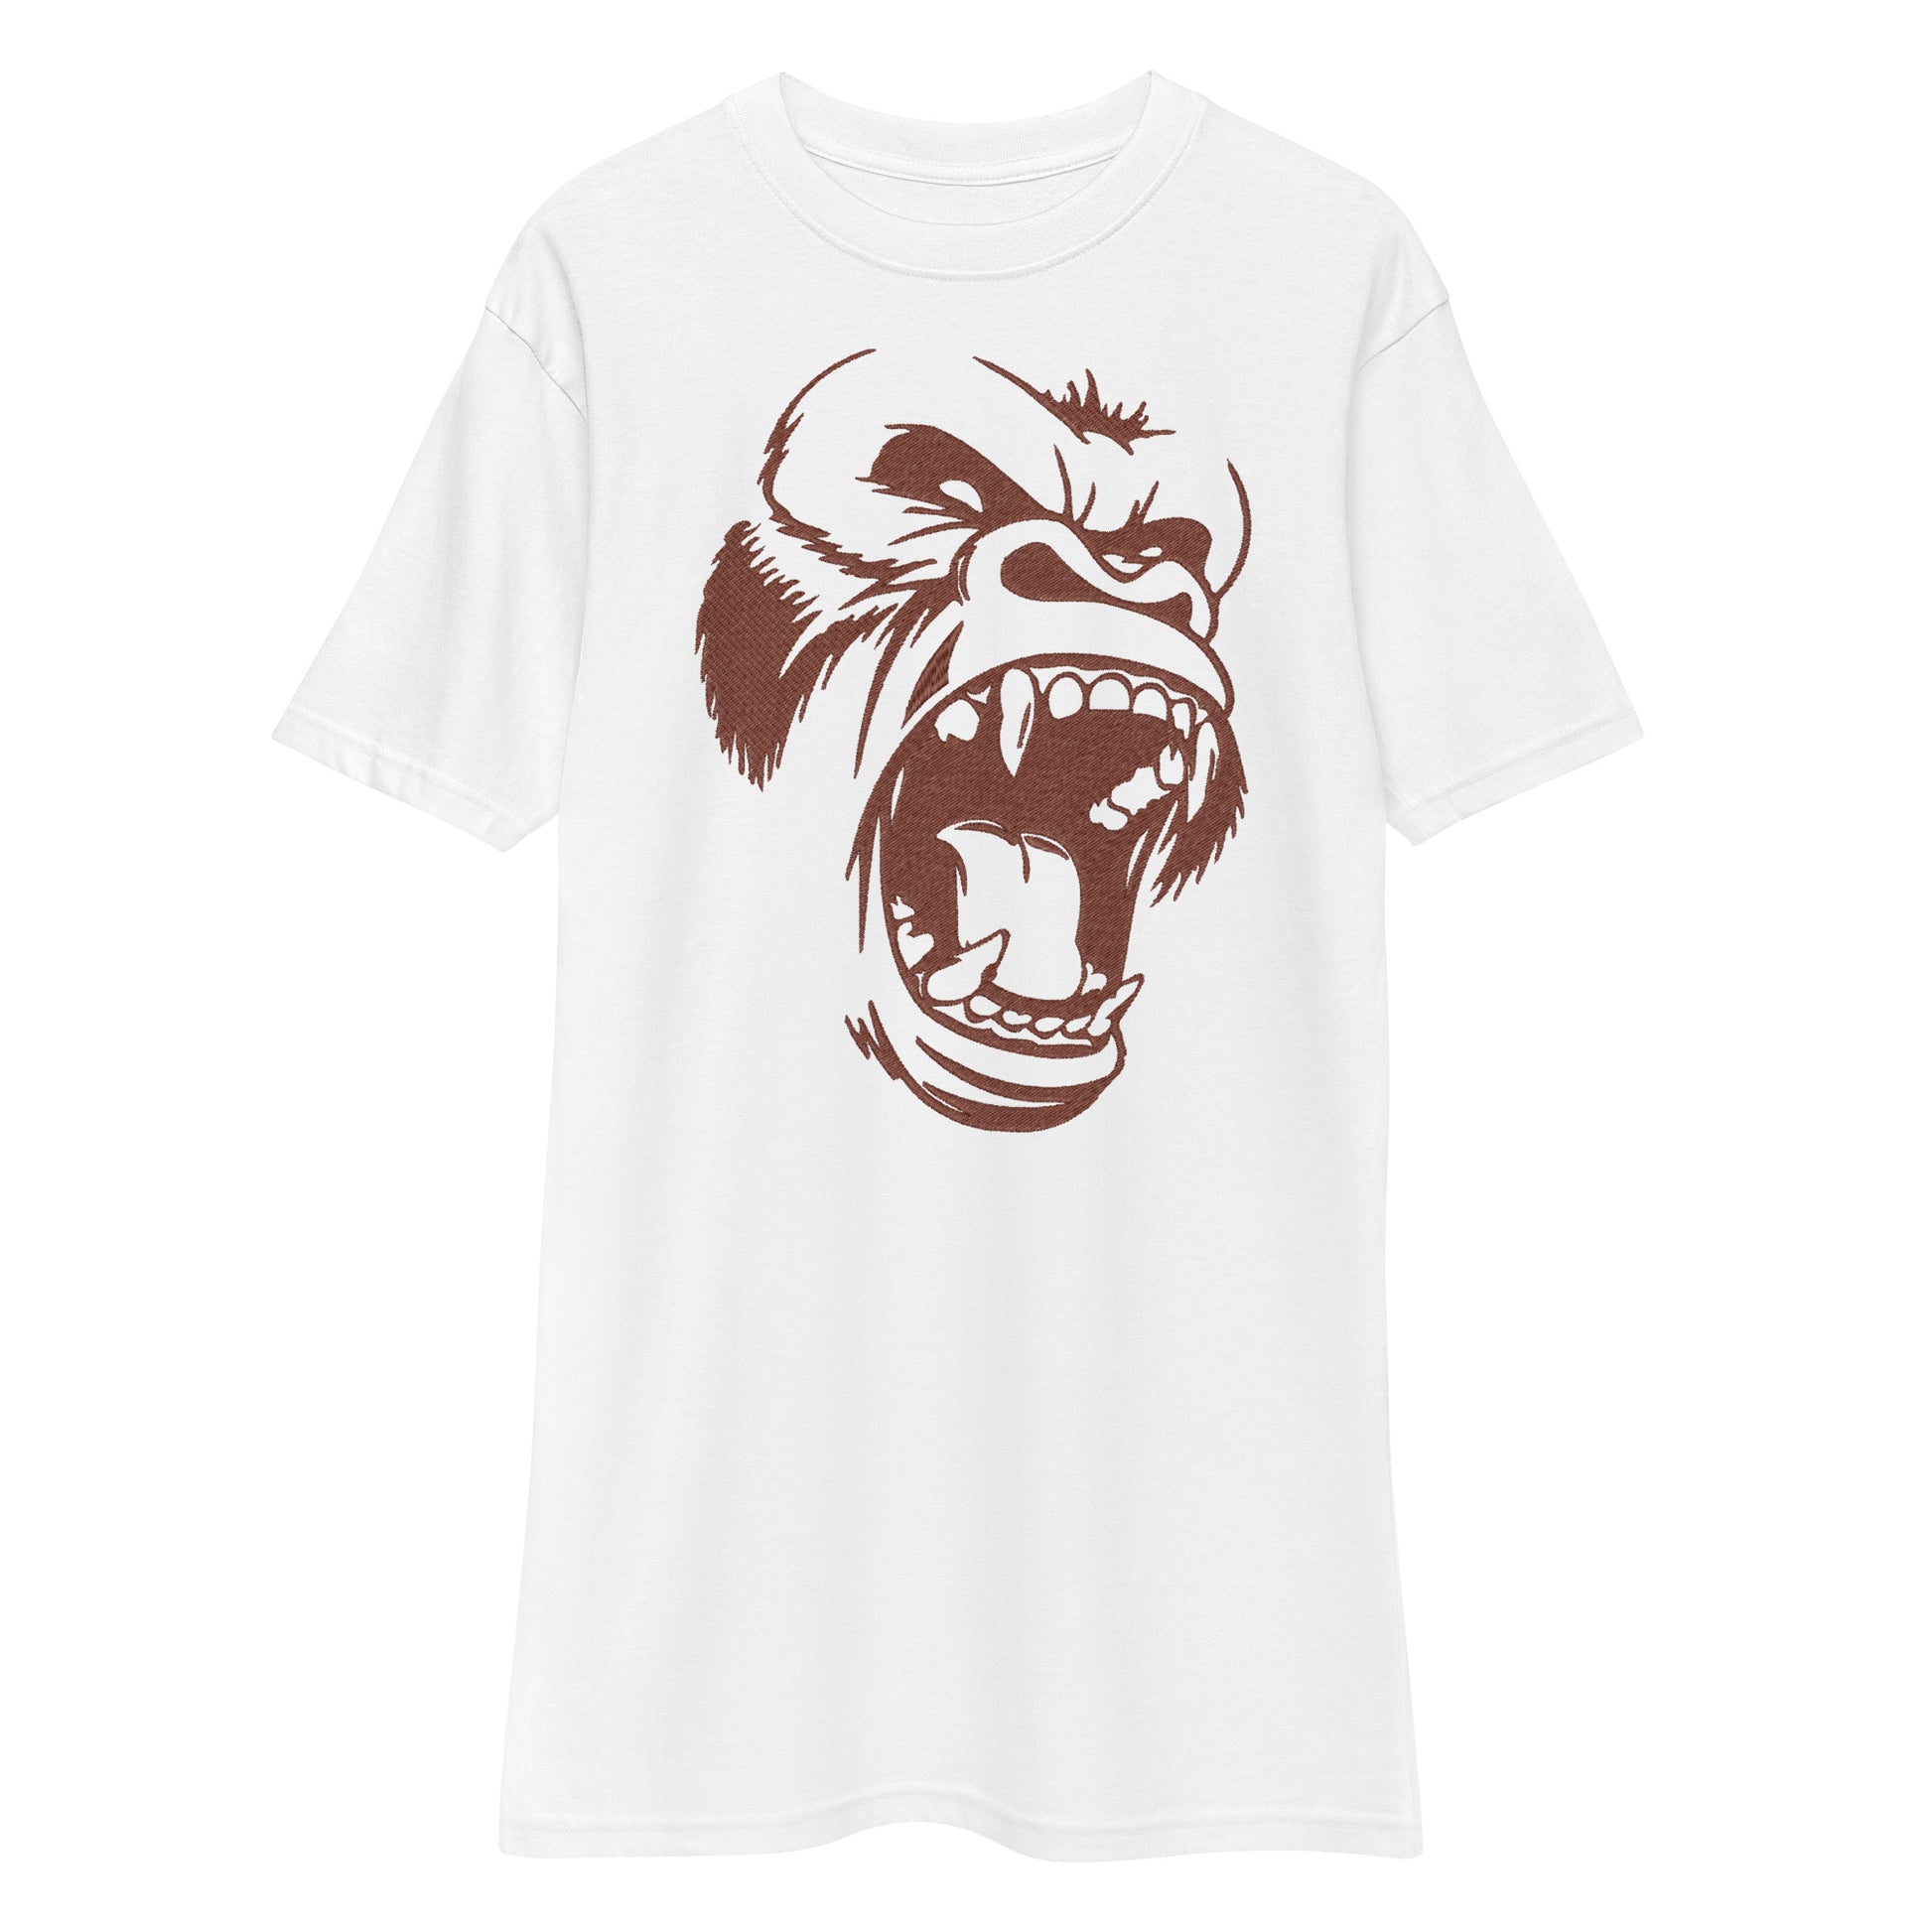 Roaring Gorilla GILDAN T-Shirt - Magandato